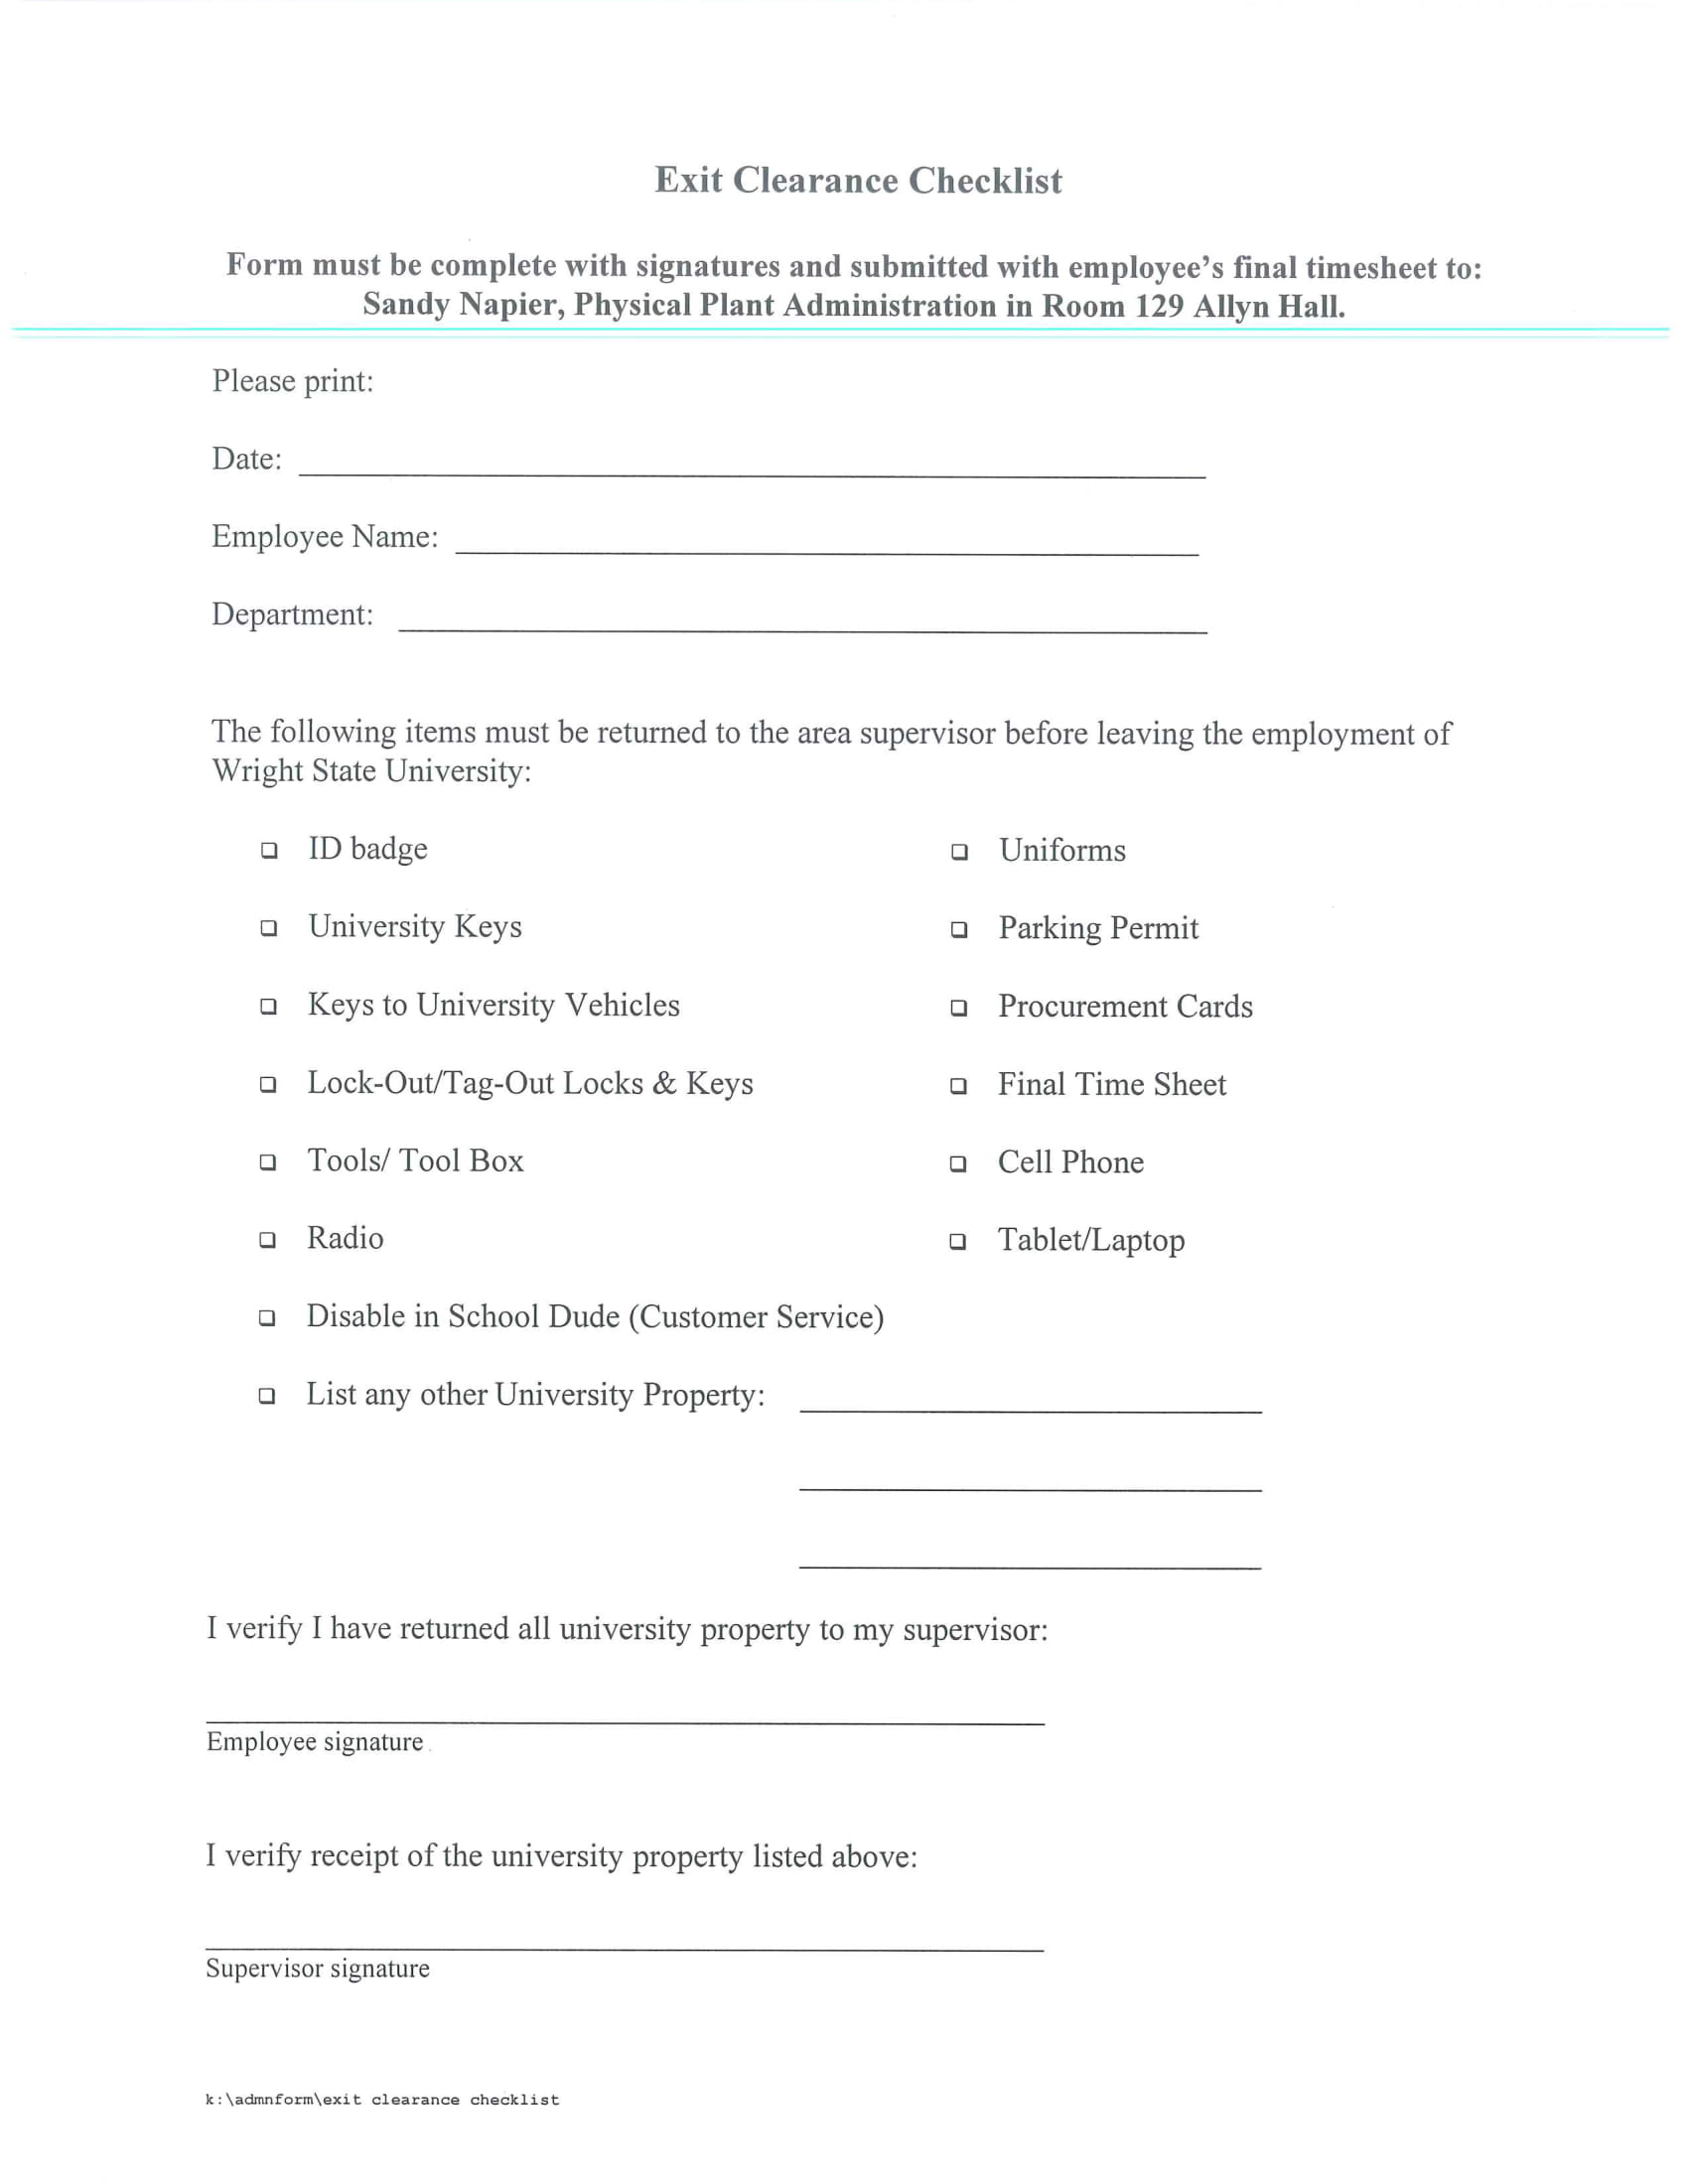 Exit Checklist Form